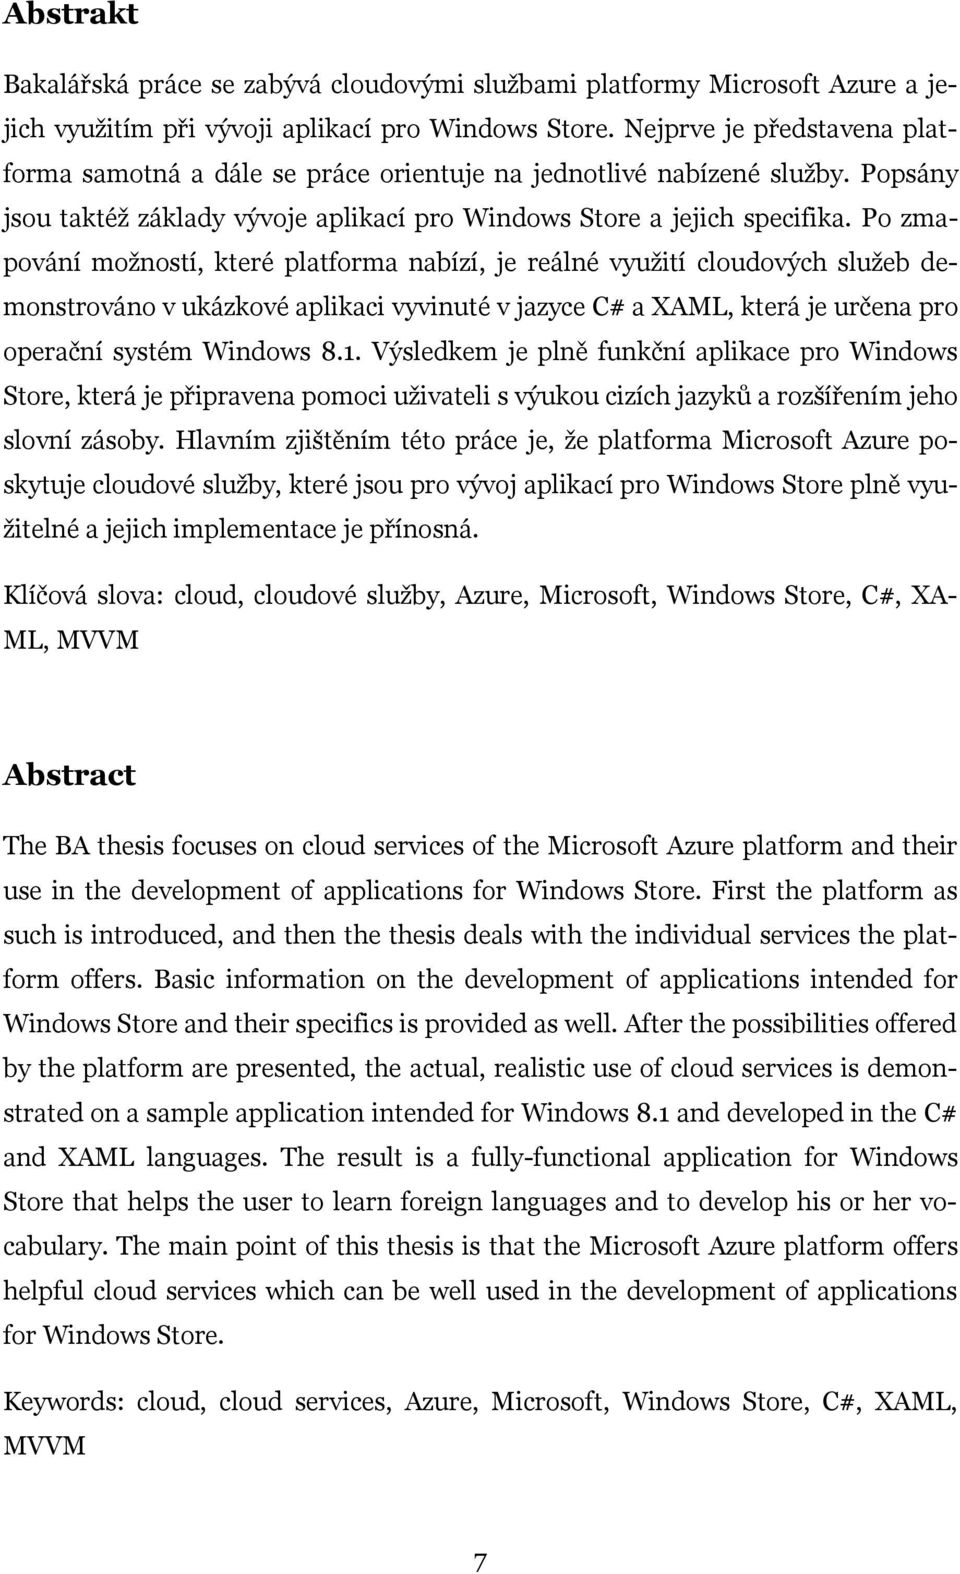 Po zmapování možností, které platforma nabízí, je reálné využití cloudových služeb demonstrováno v ukázkové aplikaci vyvinuté v jazyce C# a XAML, která je určena pro operační systém Windows 8.1.